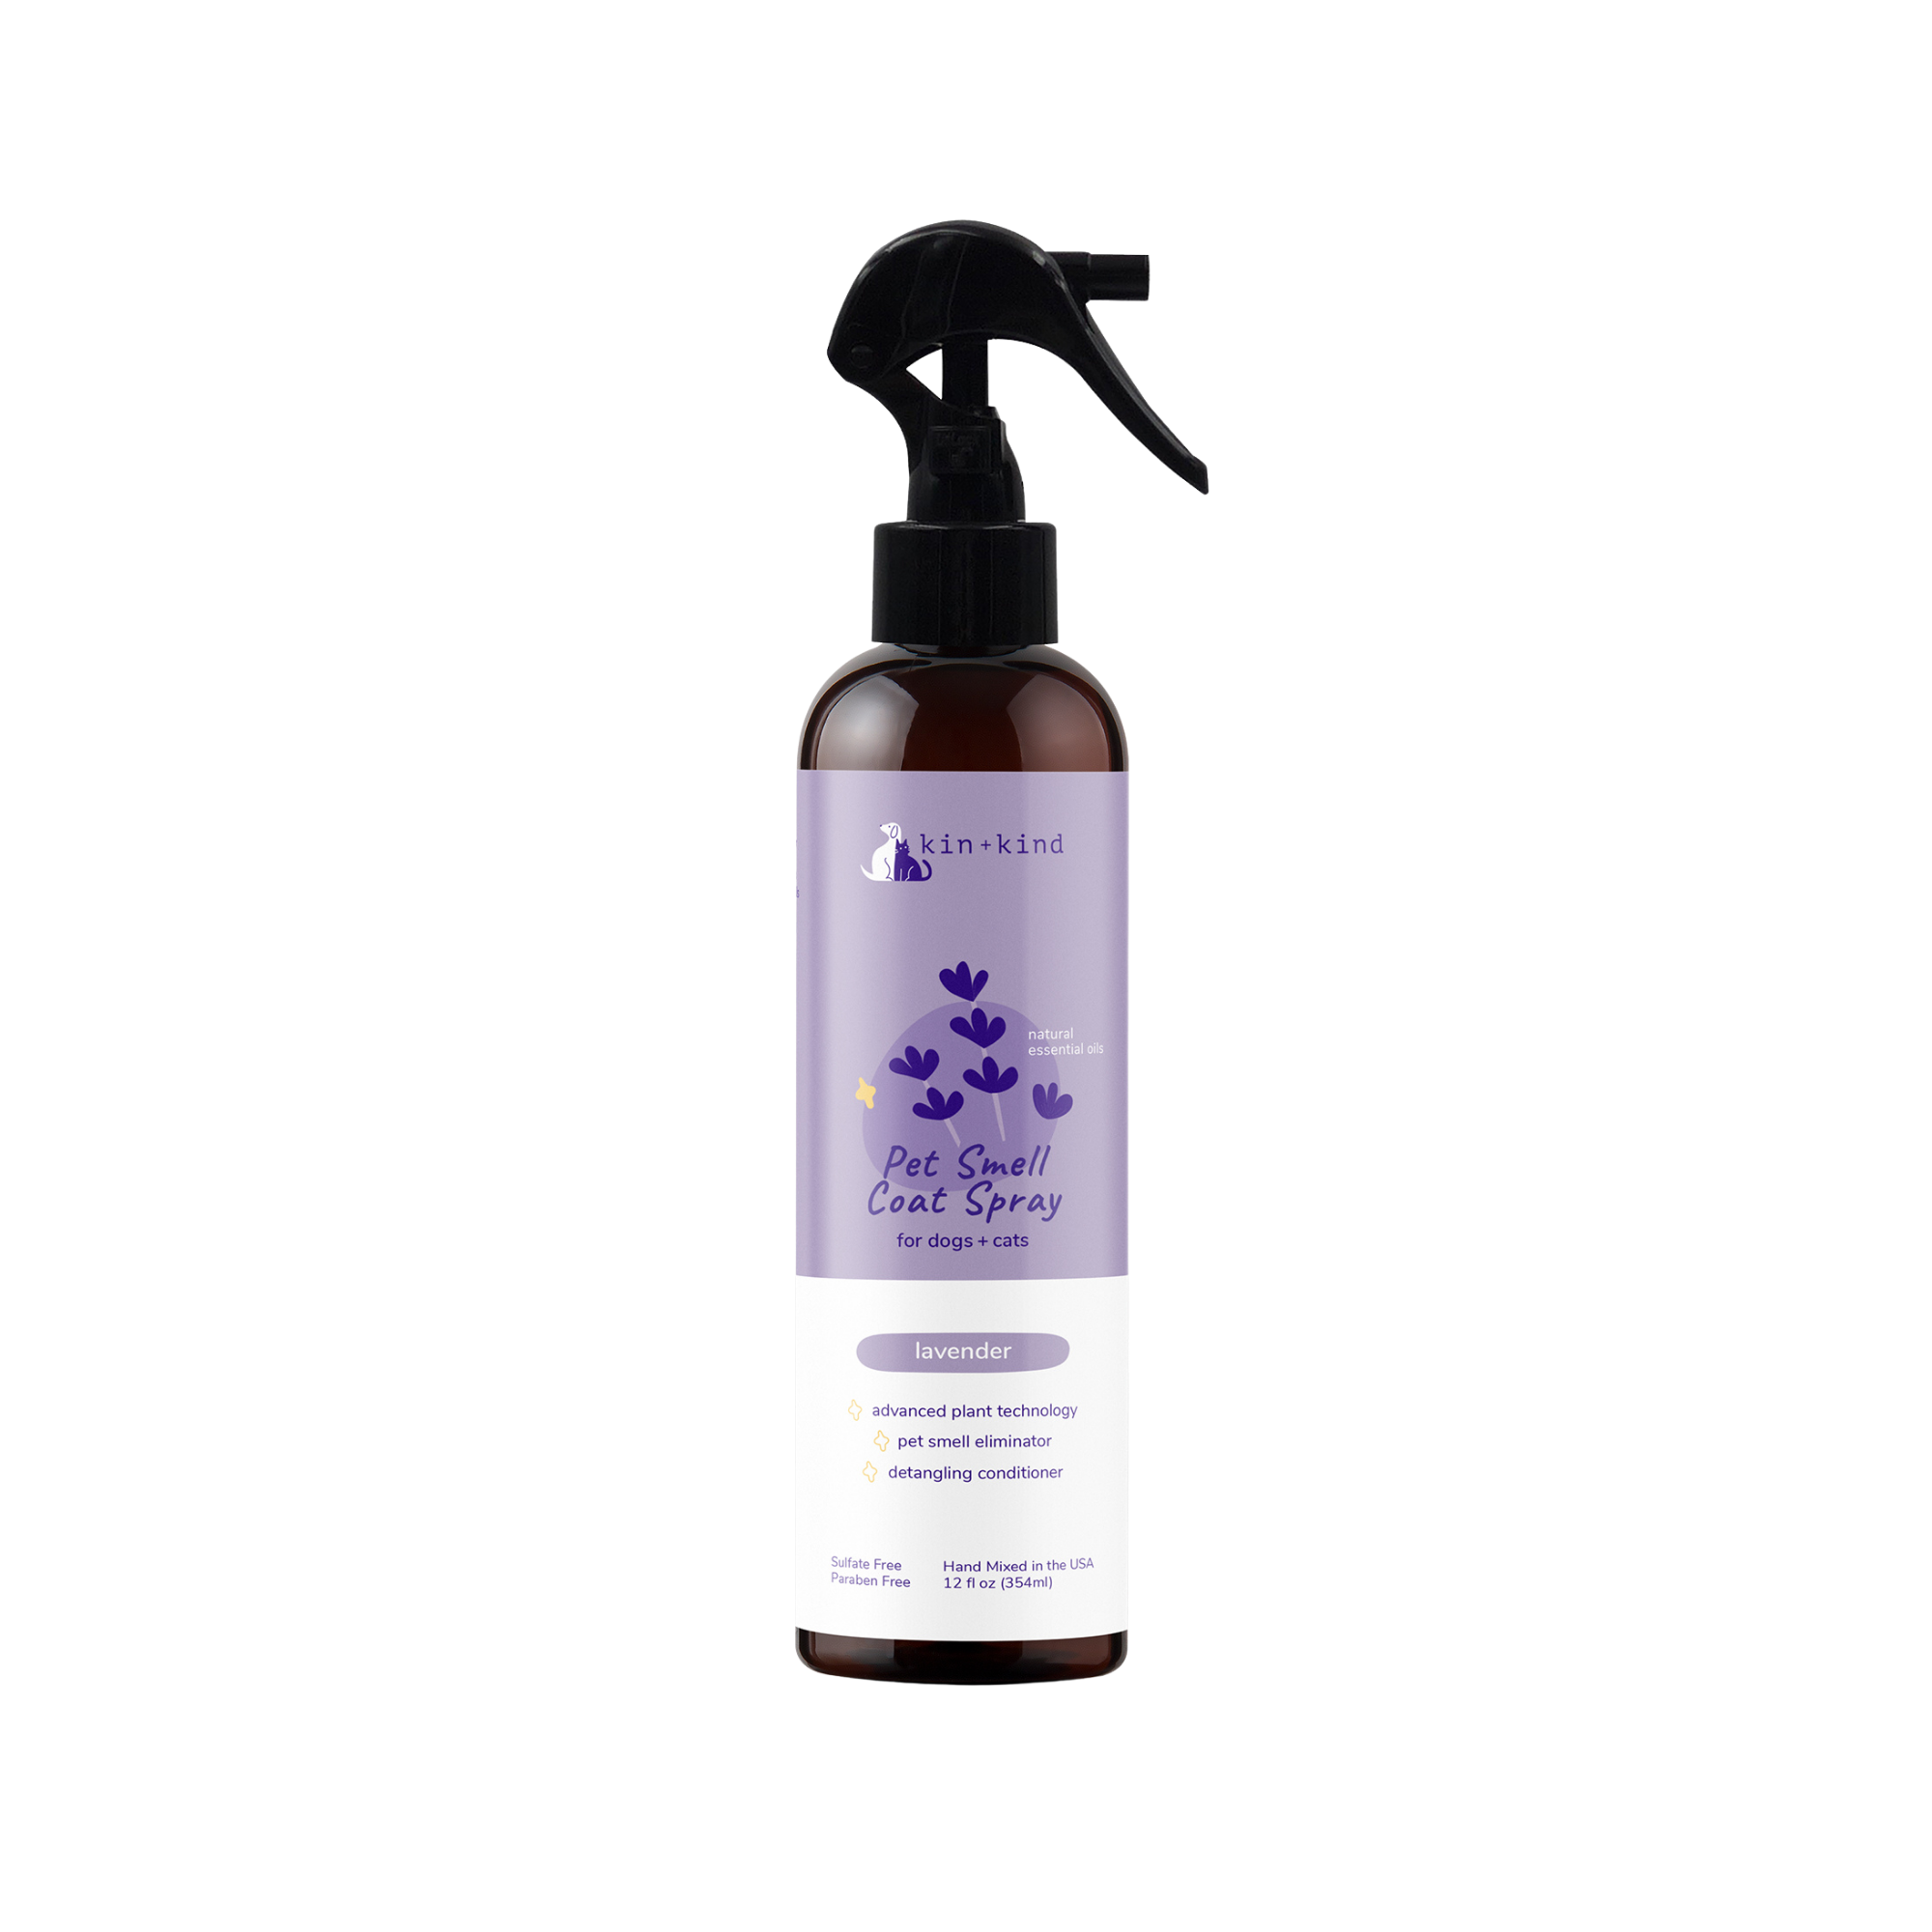 Kin + Kind Lavender Natural Coat Spray for Dog & Cat Smells, 12 oz - Mutts & Co.